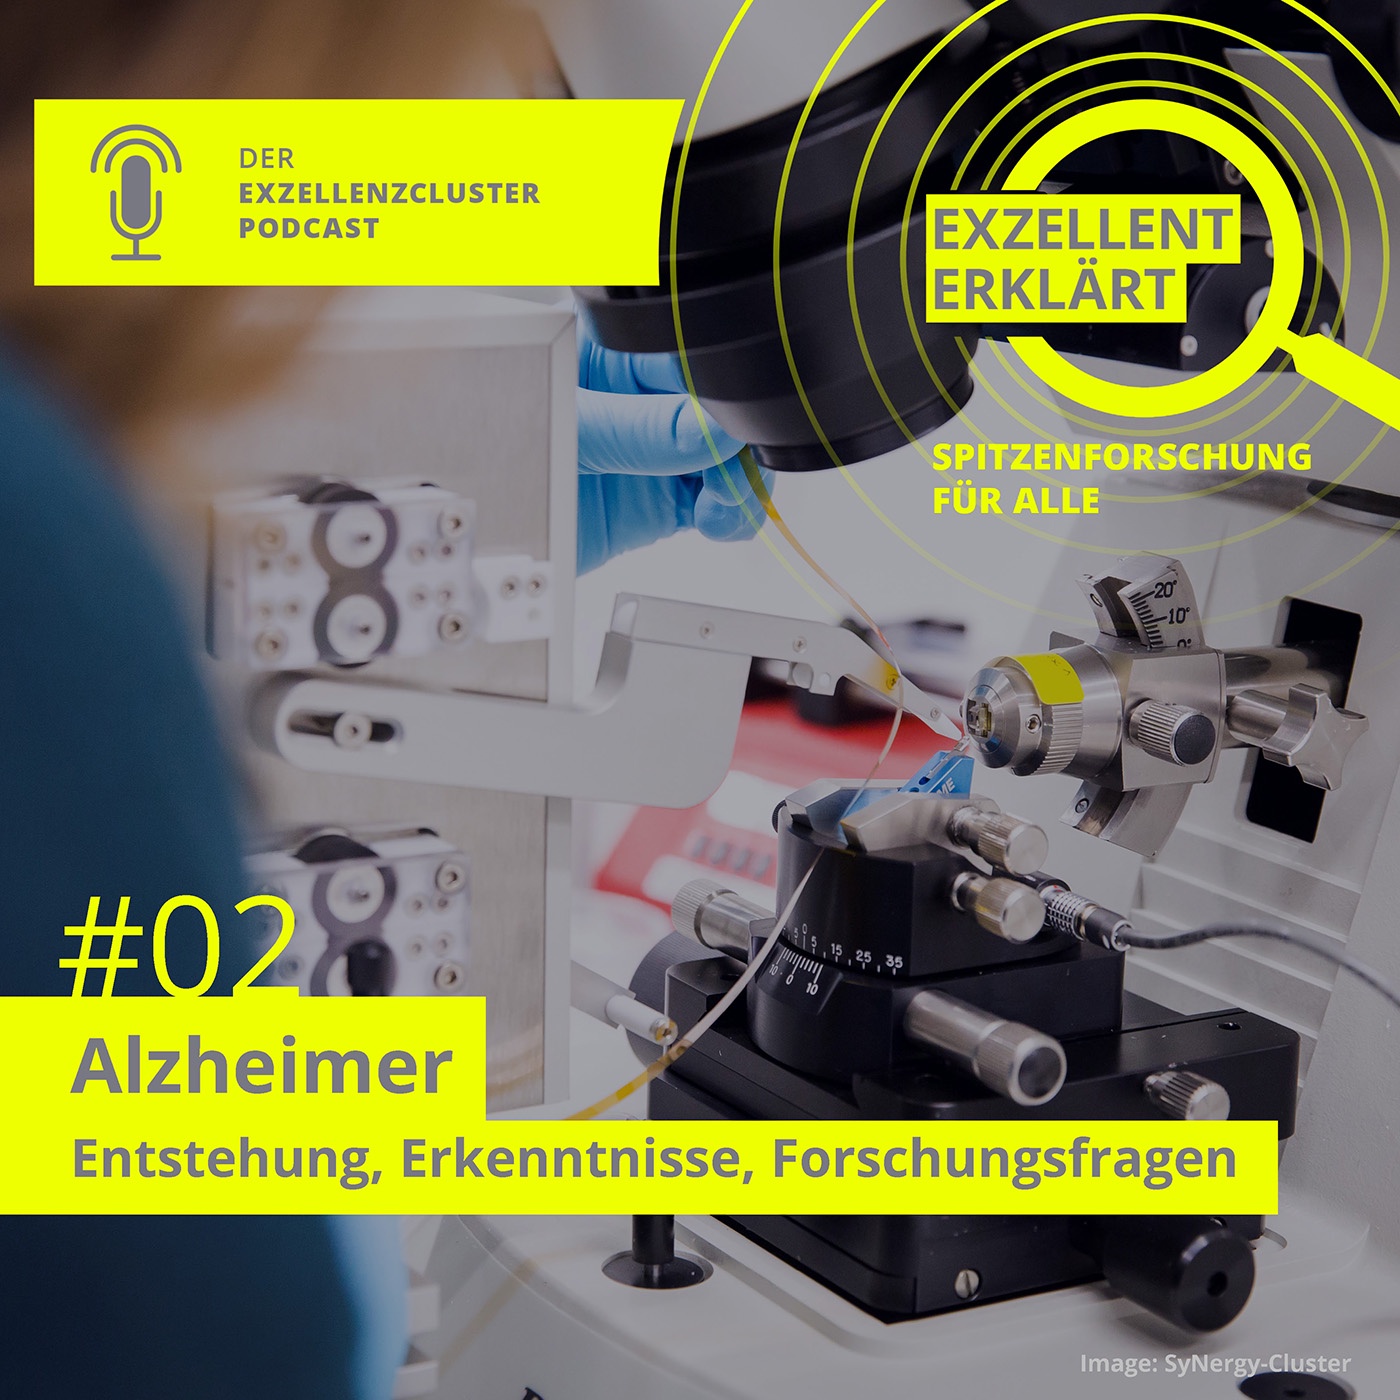 Alzheimer – Entstehung, Erkenntnisse, Forschungsfragen